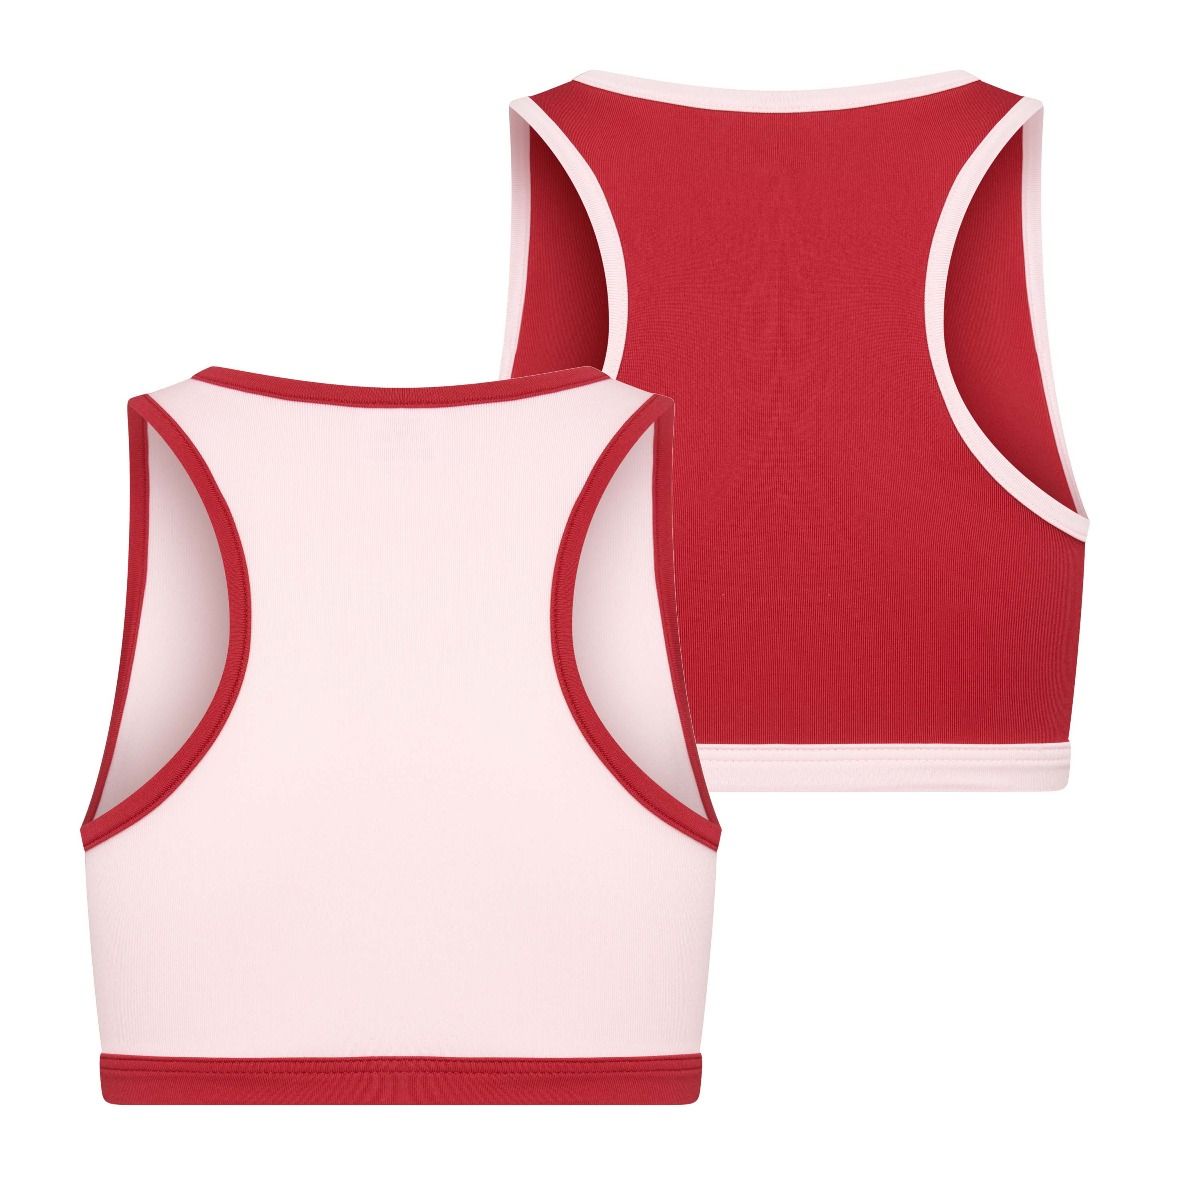 Beeren 2Pack Mix Match Meisjes Topjes Roze Rood achterkant